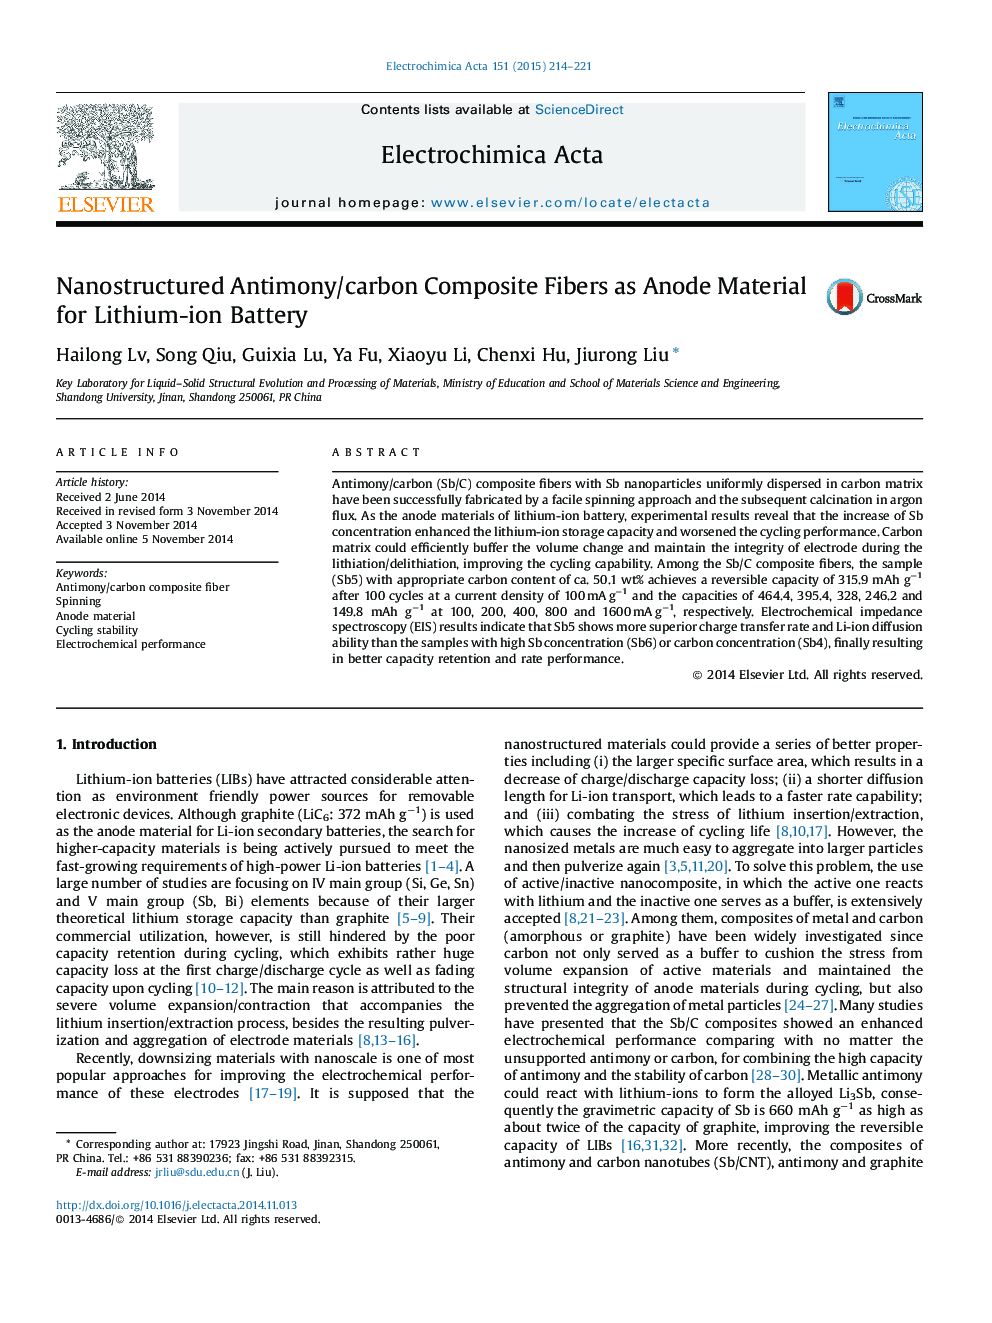 الیاف کامپوزیتی نانوساختار آنتیموان / کربن به عنوان ماده آنودایز برای باتری لیتیوم یون 